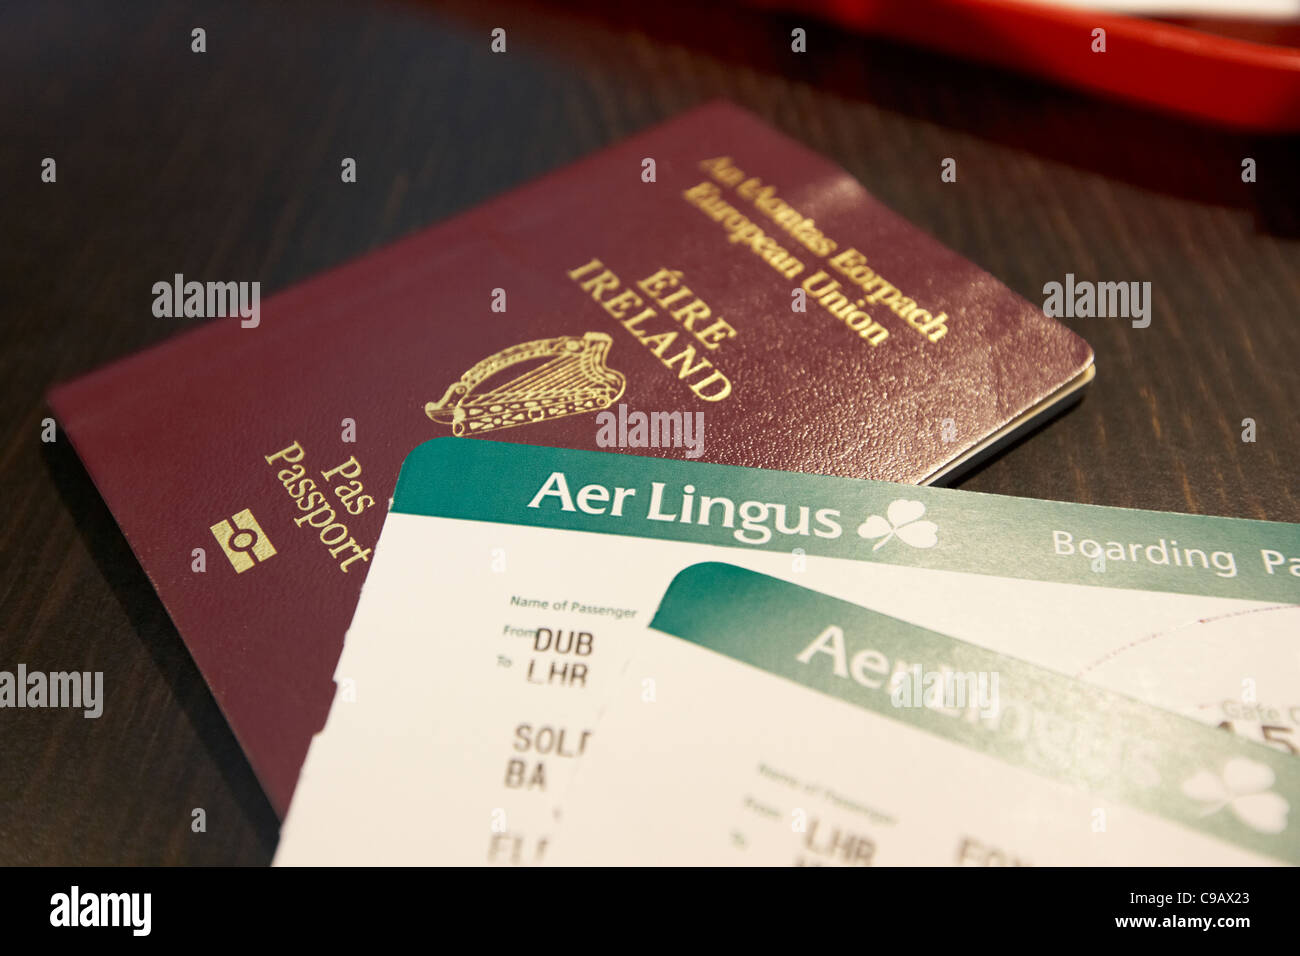 nouveau passeport biométrique irlandais de l'ue avec cartes d'embarquement aer lingus dublin à heathrow république d'irlande Banque D'Images